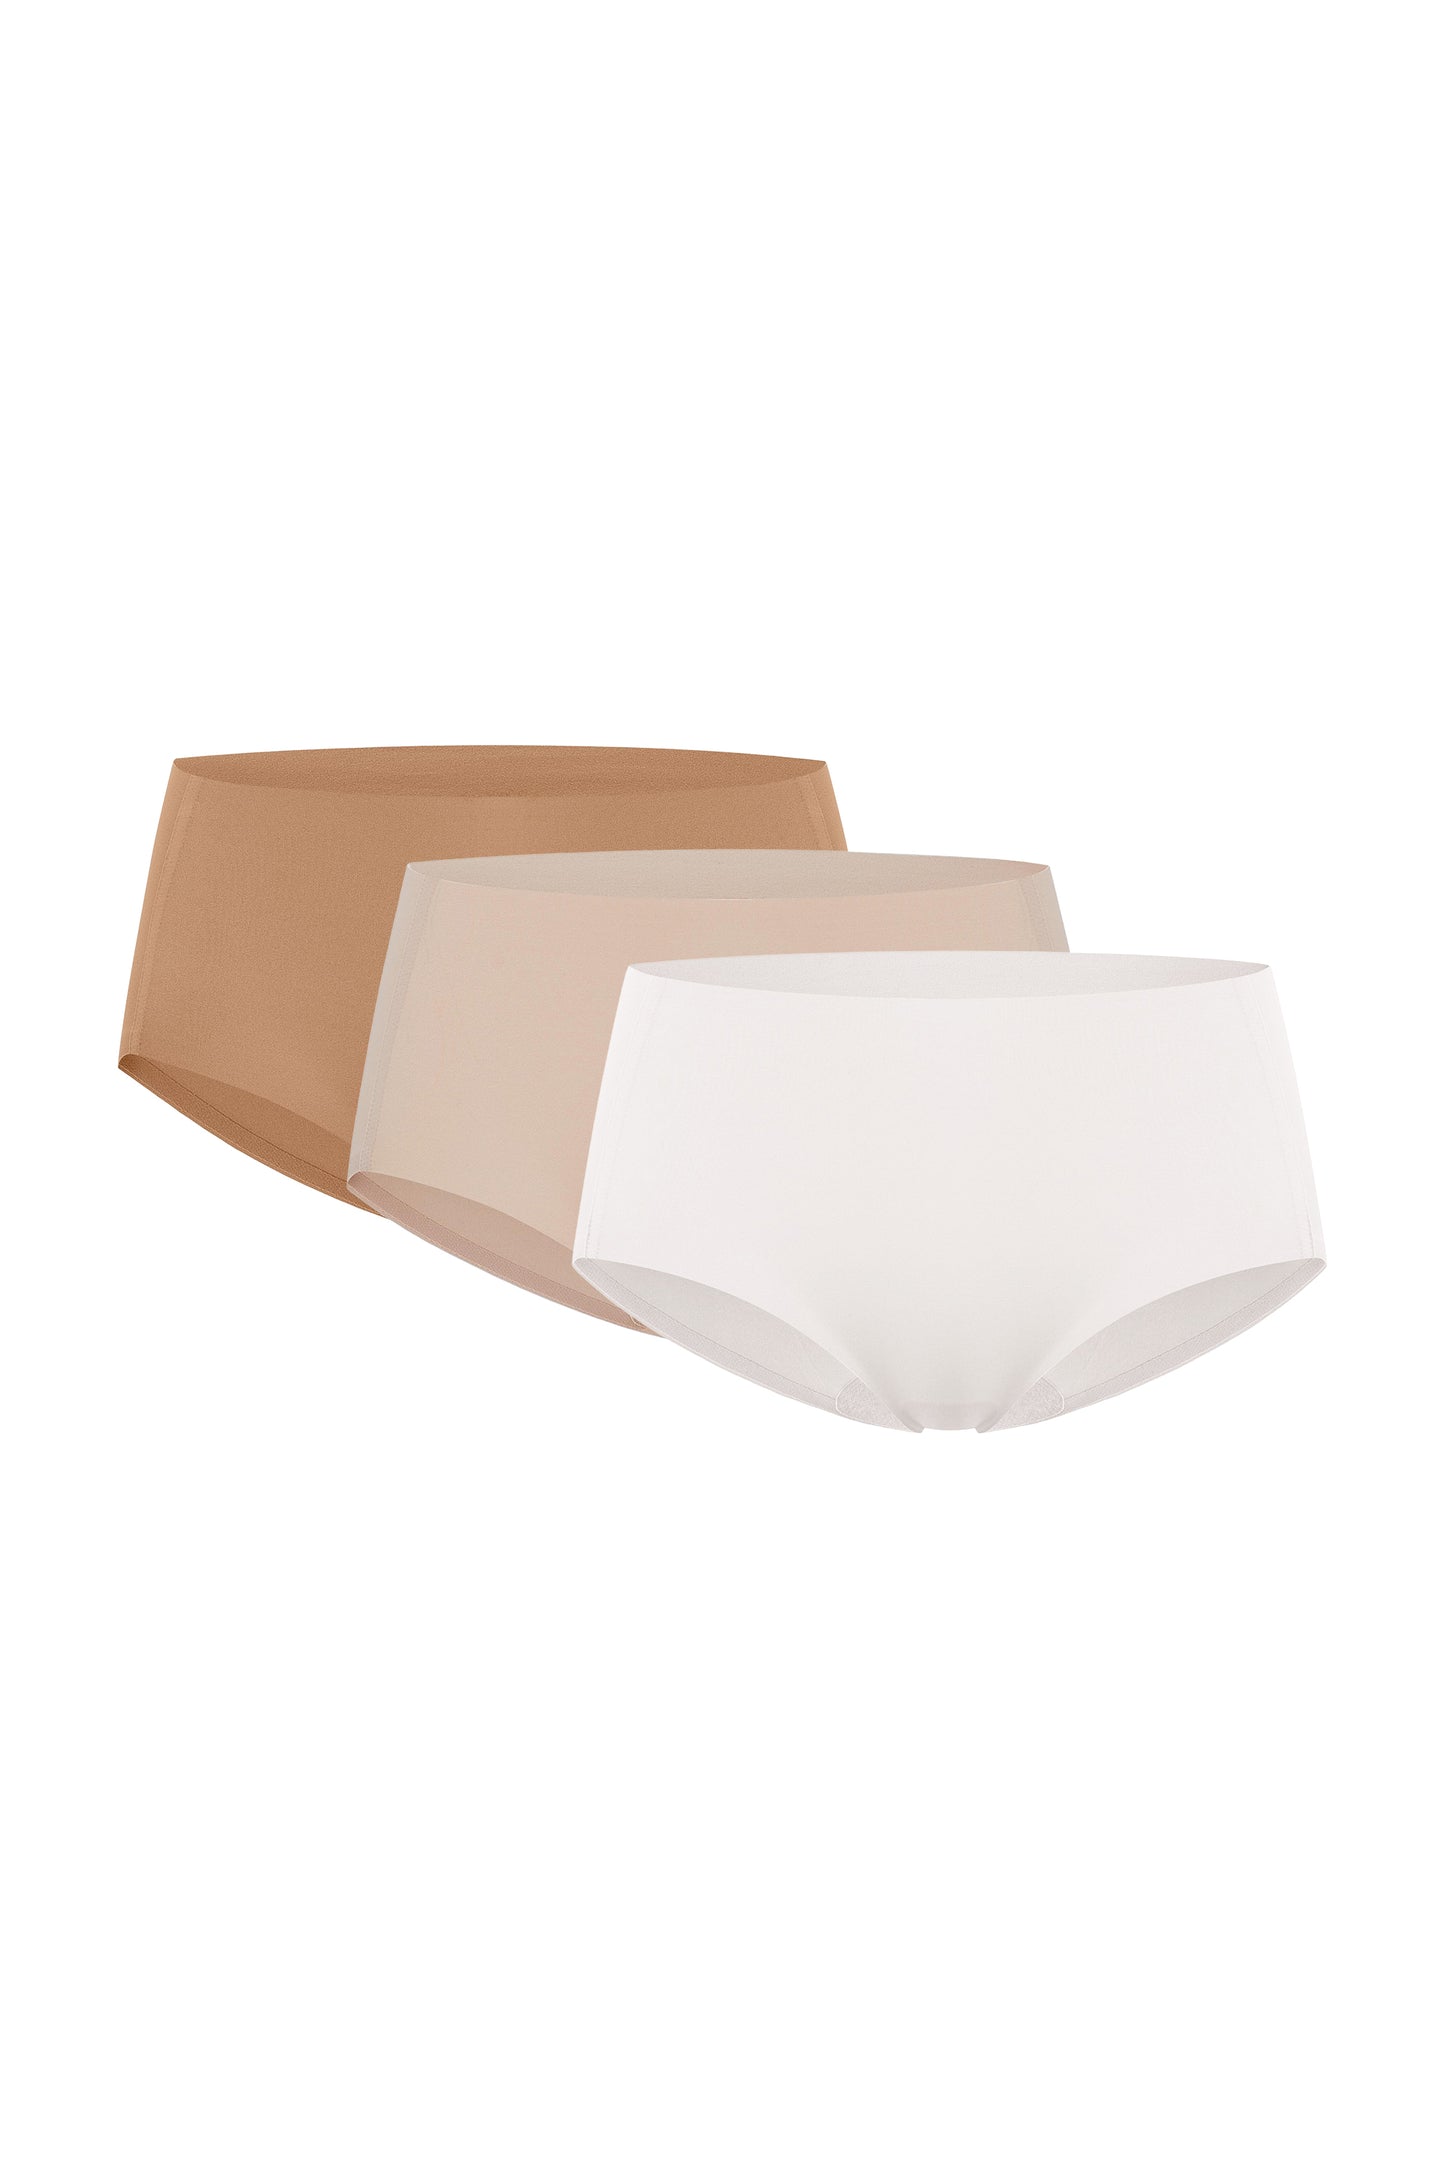 Flay lay images of white underwear, beige underwear, and dark tan underwear